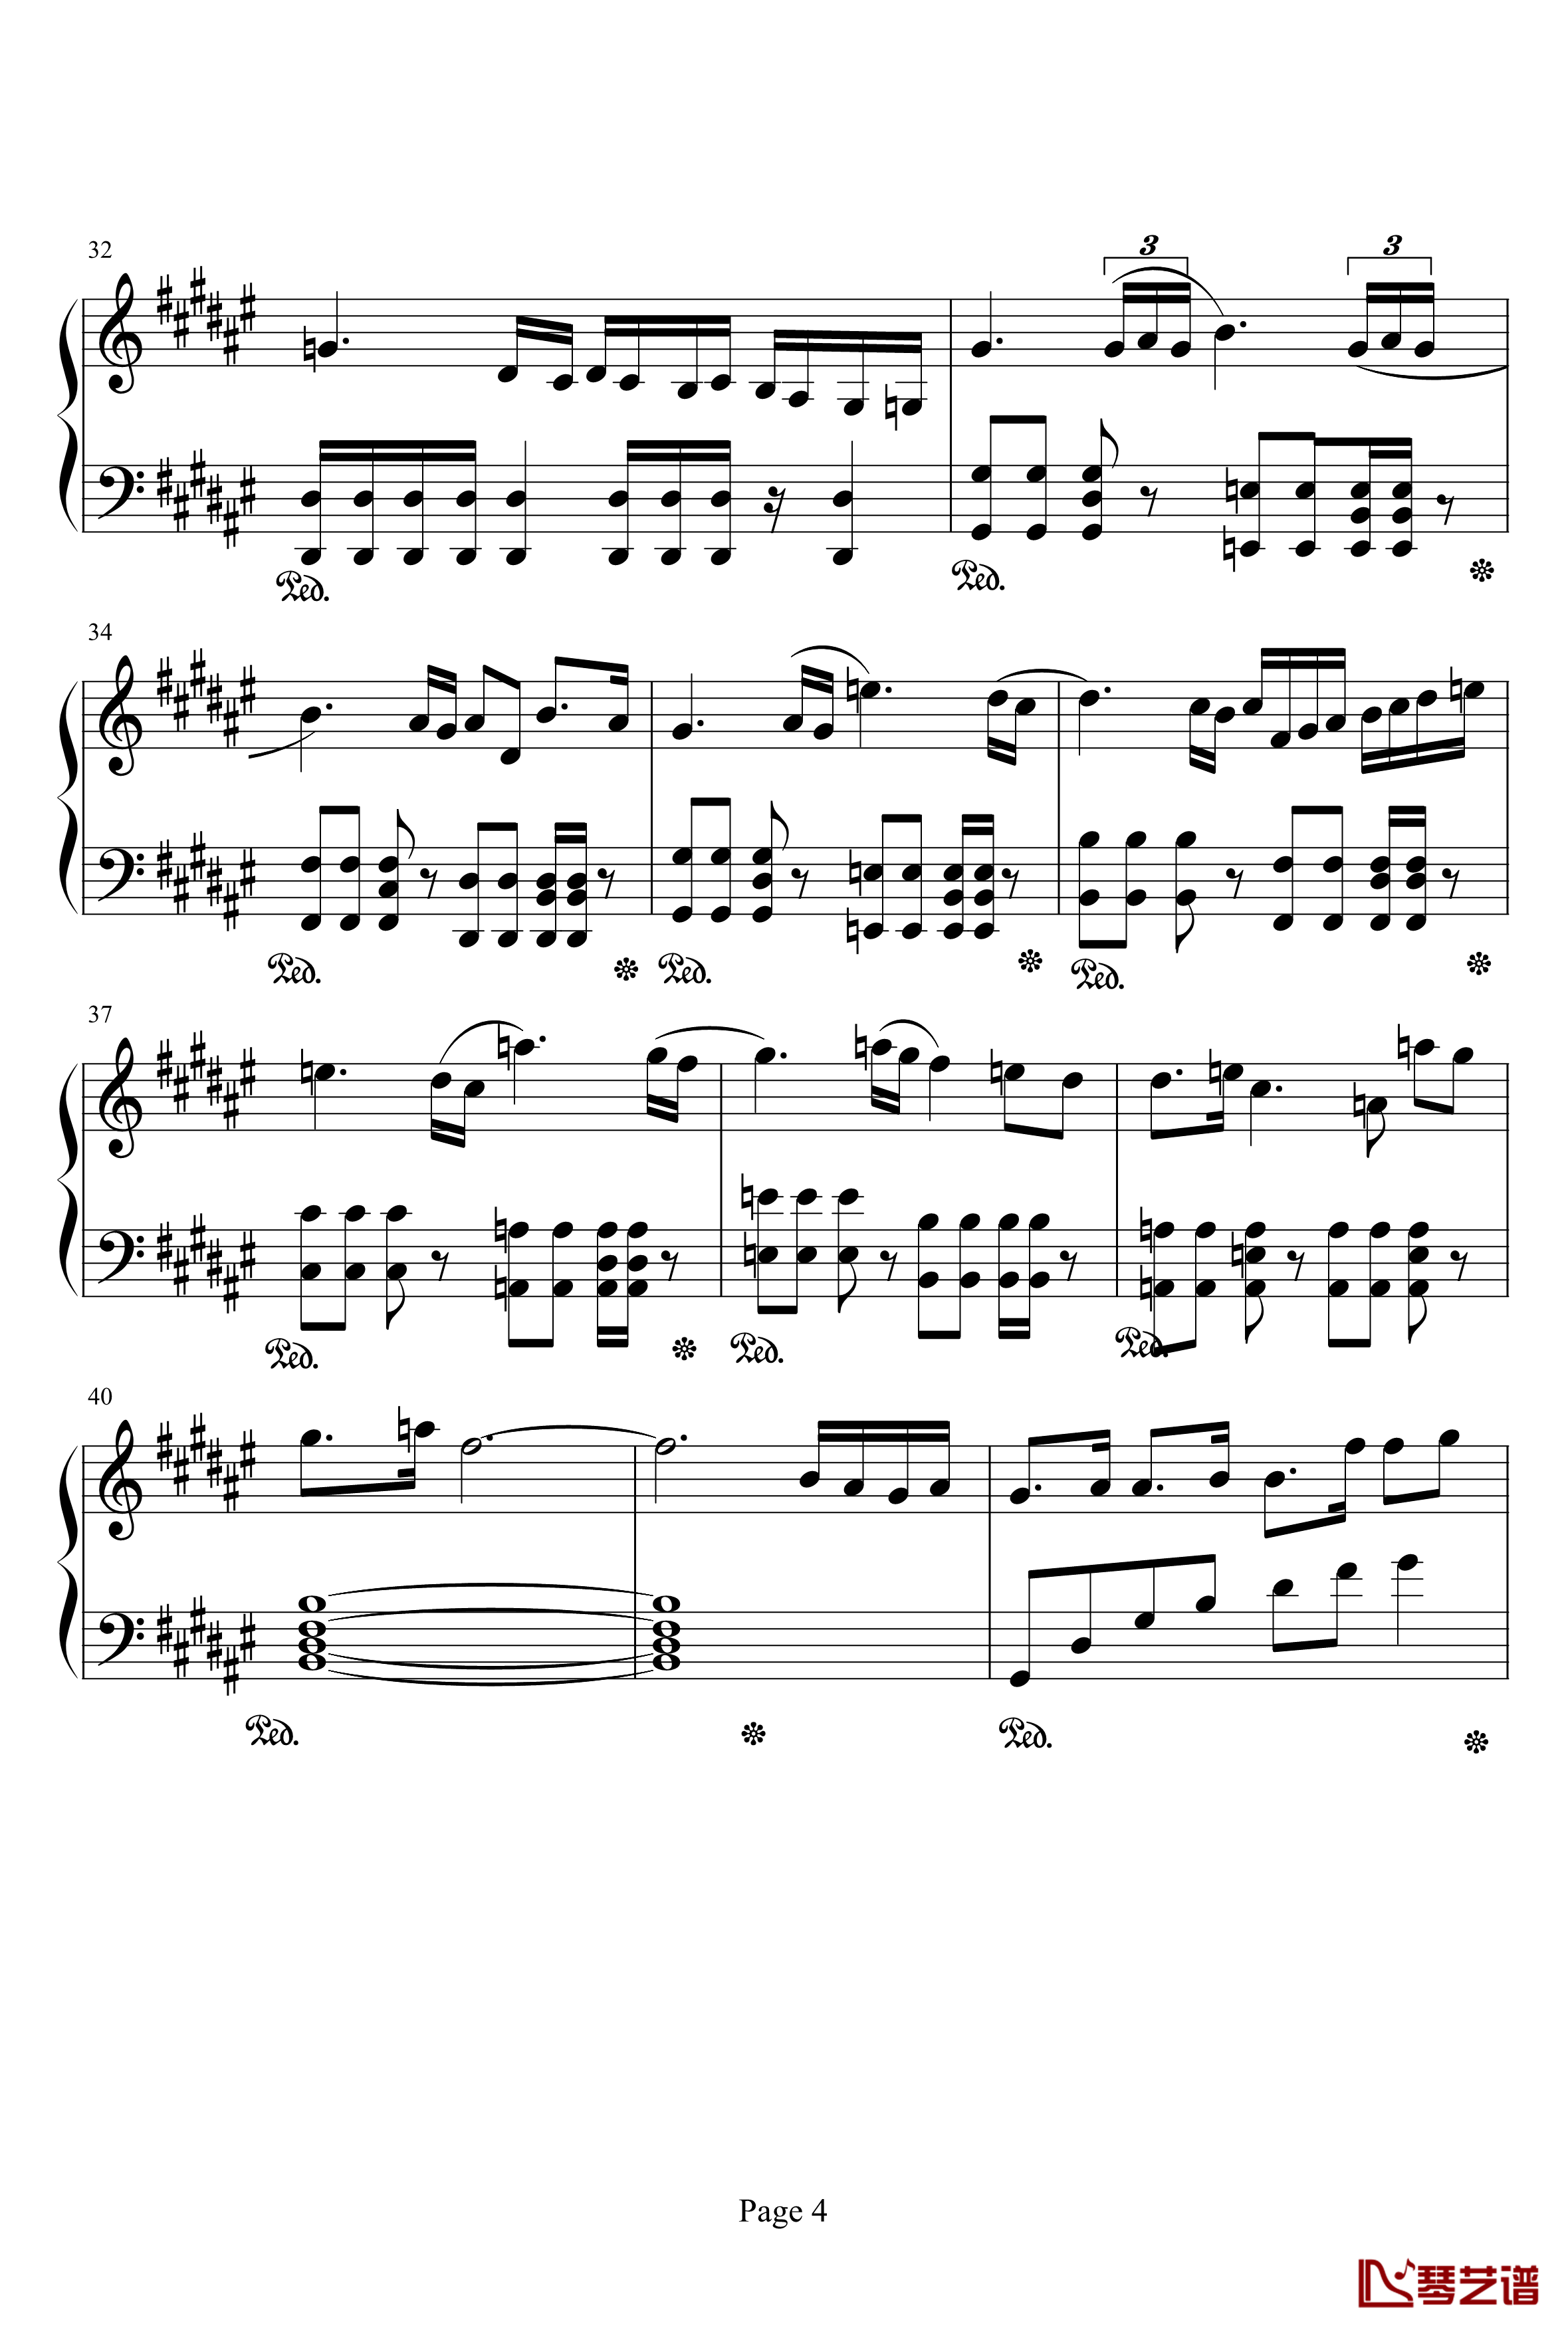 亡灵序曲钢琴谱-完整版-亡灵序曲4